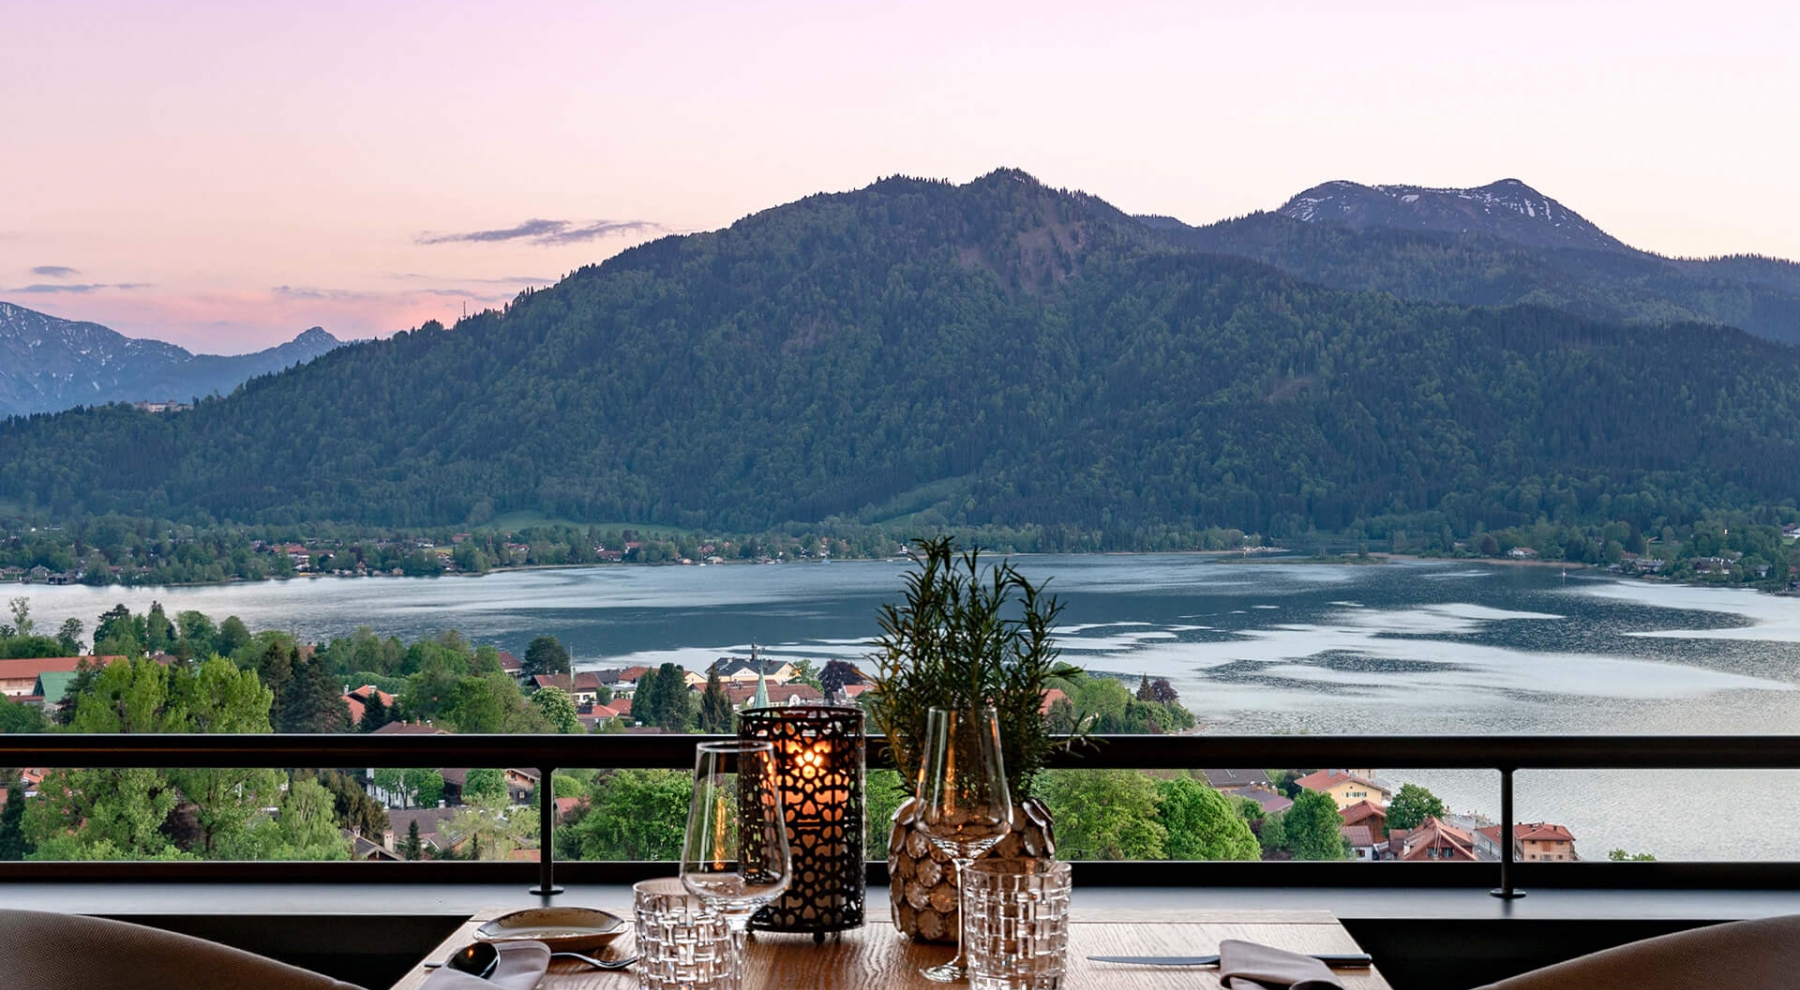 Aufnahme von einem zum Abendessen gedeckten Tisch im Restaurant des Hotels Das Tegernsee mit Blick auf den Tegernsee und die umliegenden Berge während der Abenddämmerung.